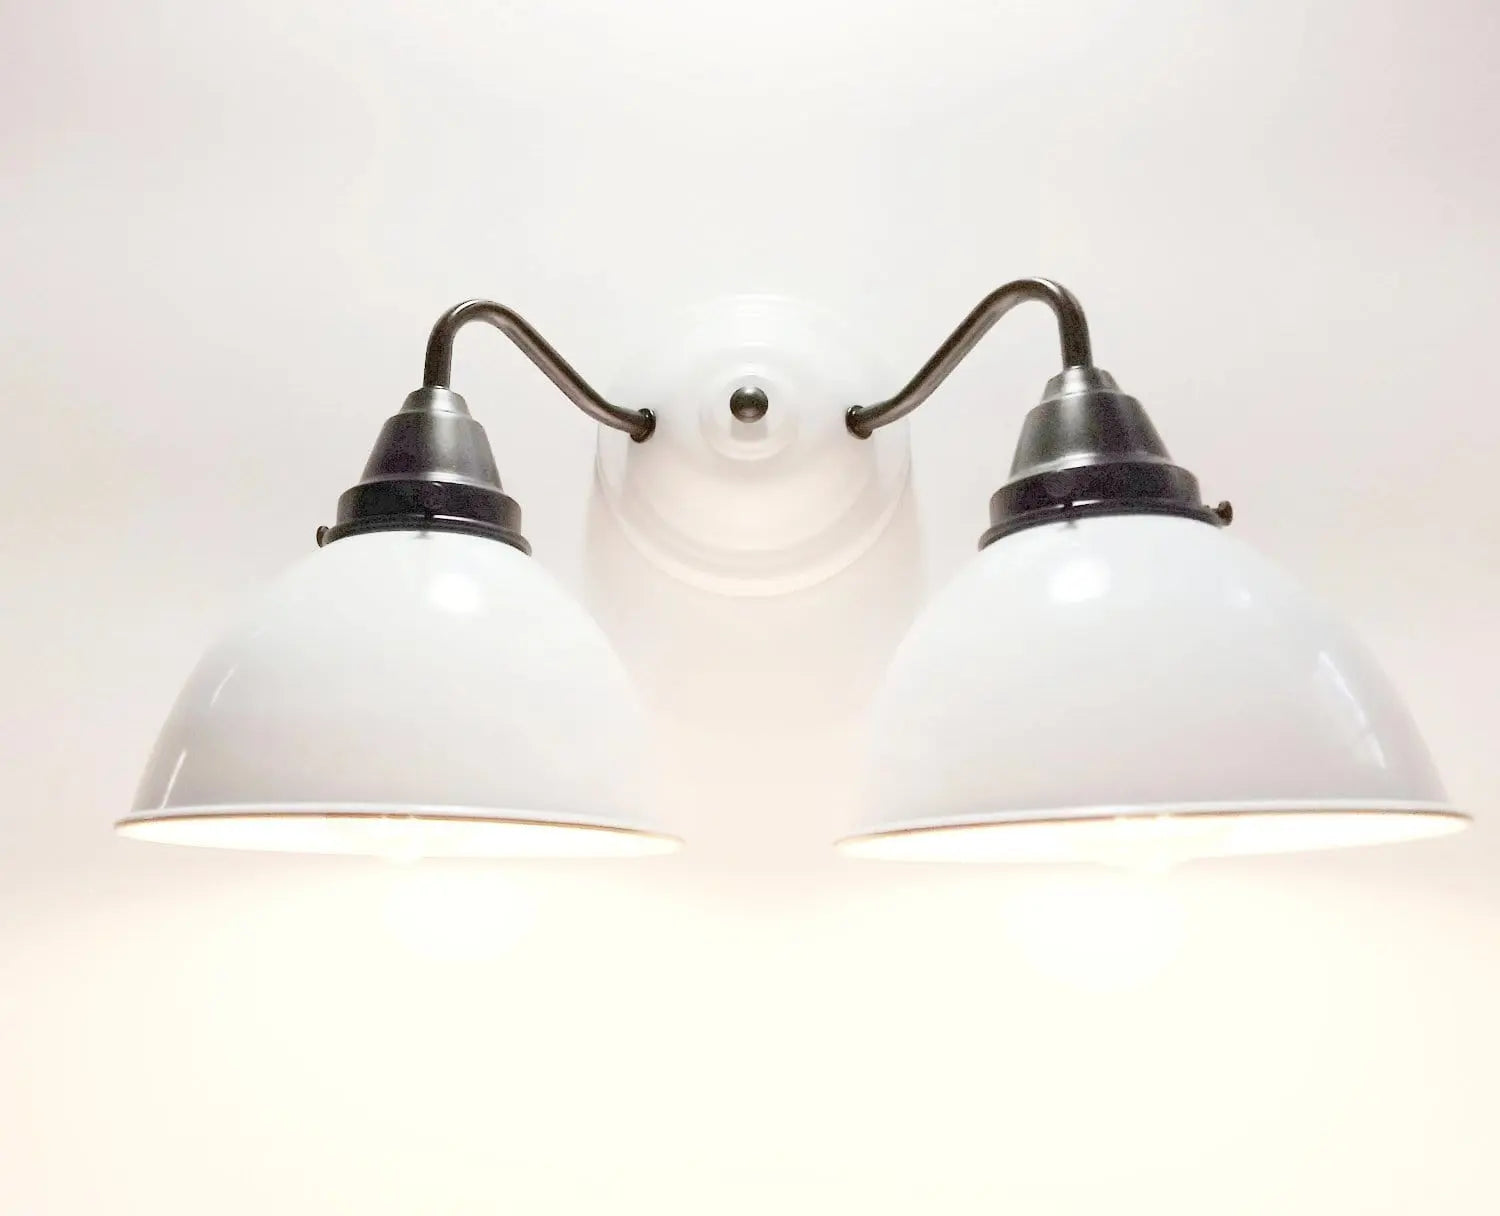 White Enamel Double Wall Light The Lamp Goods